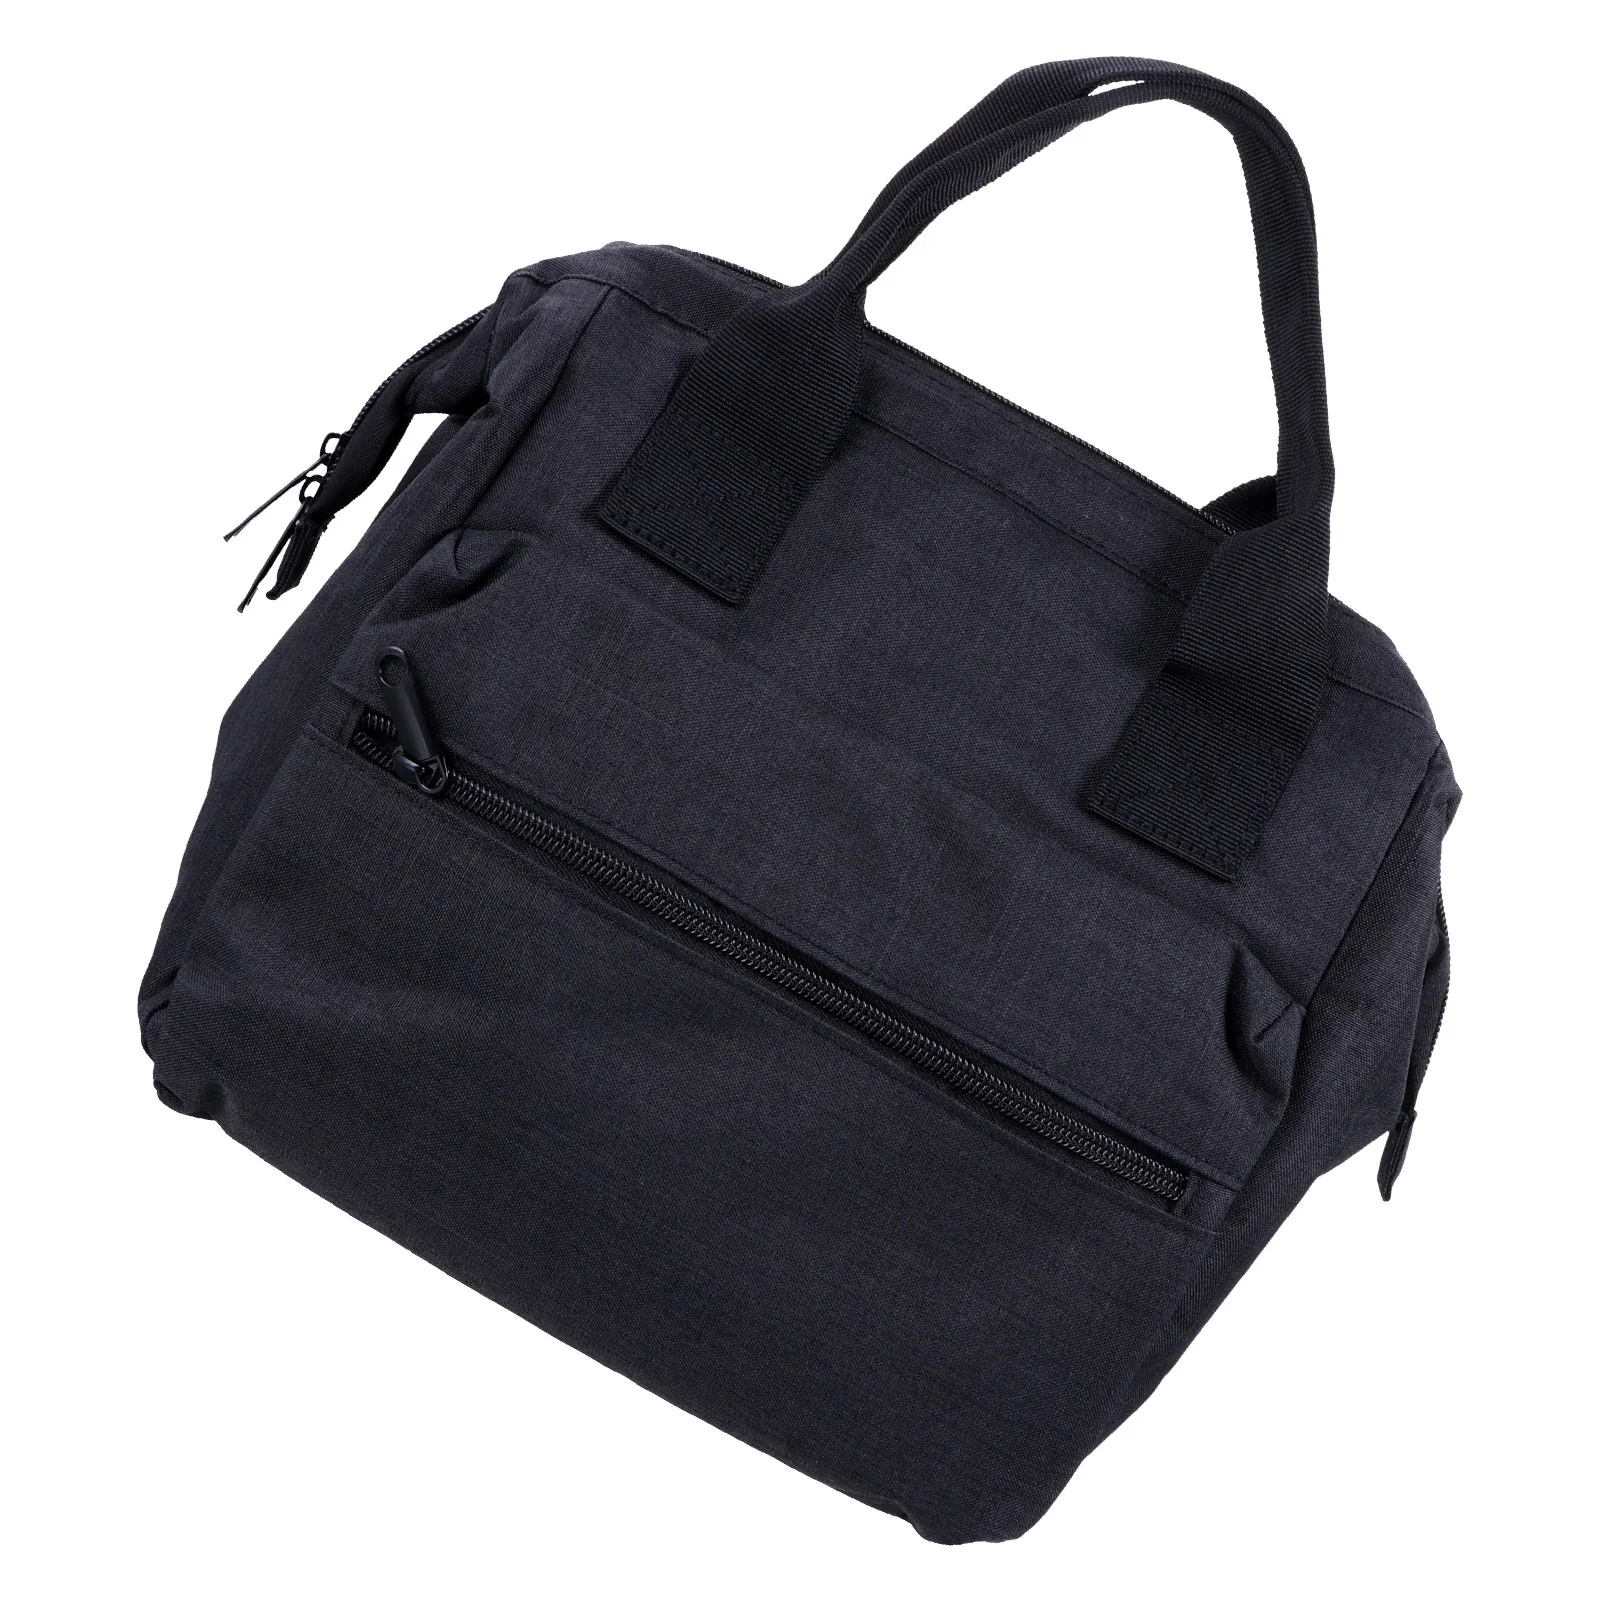 

1 шт. изоляционная сумка для ланча, практичная прочная сумка для сохранения свежести, сумка для пикника, сумка для фруктов, сумка для перенос...